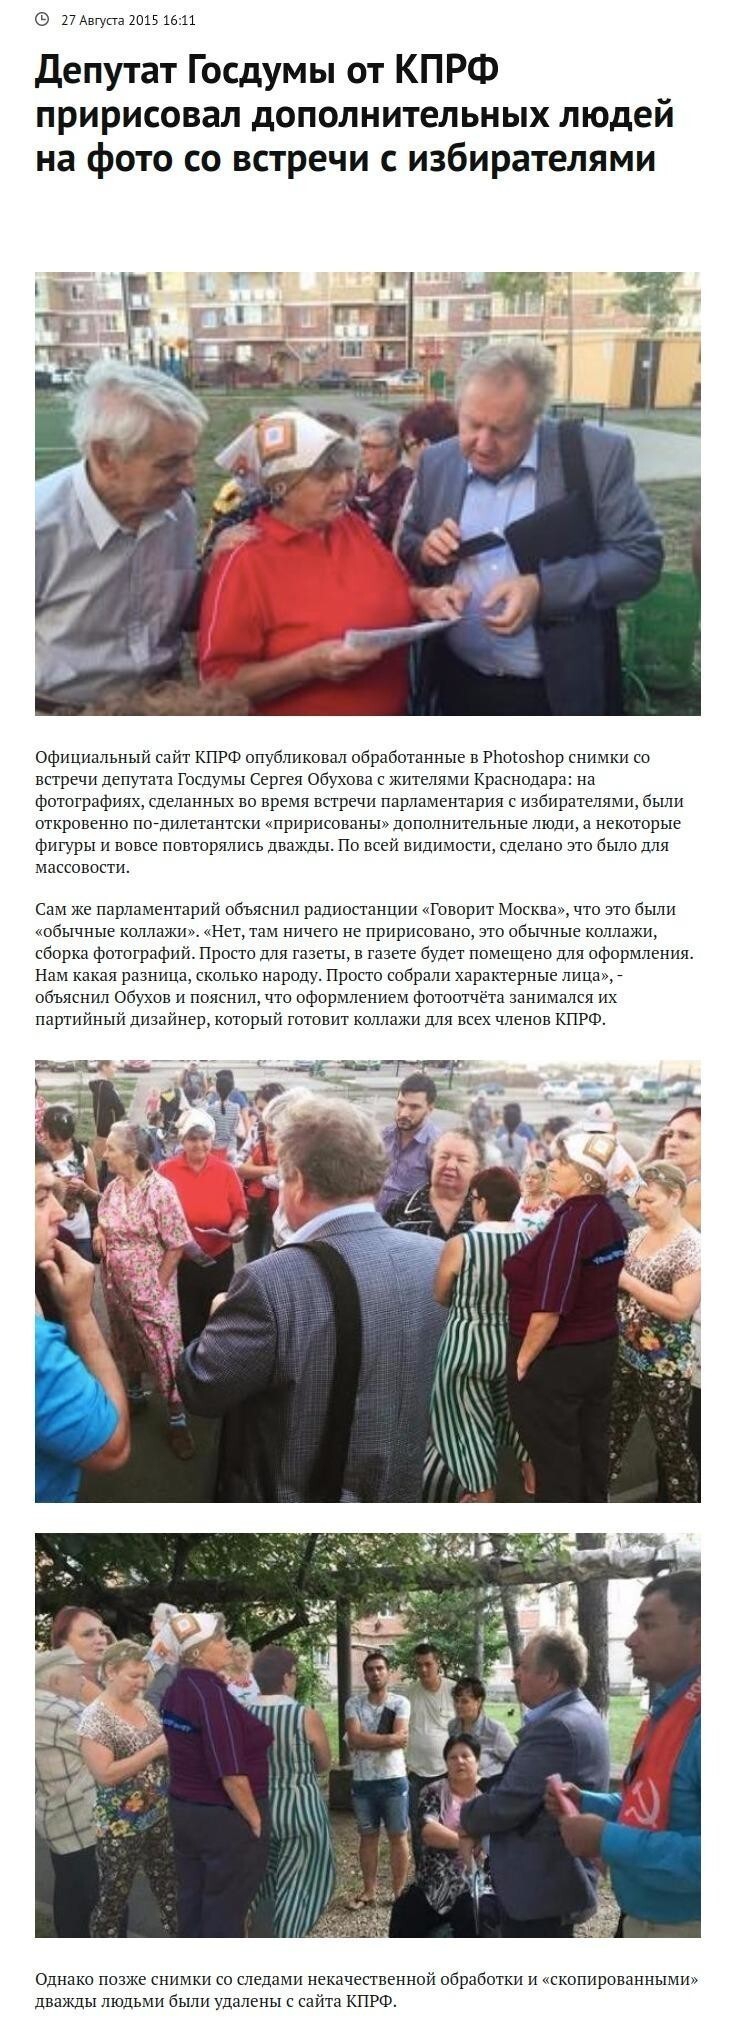 Депутат Госдумы от КПРФ пририсовал дополнительных людей на фото со встречи с избирателями